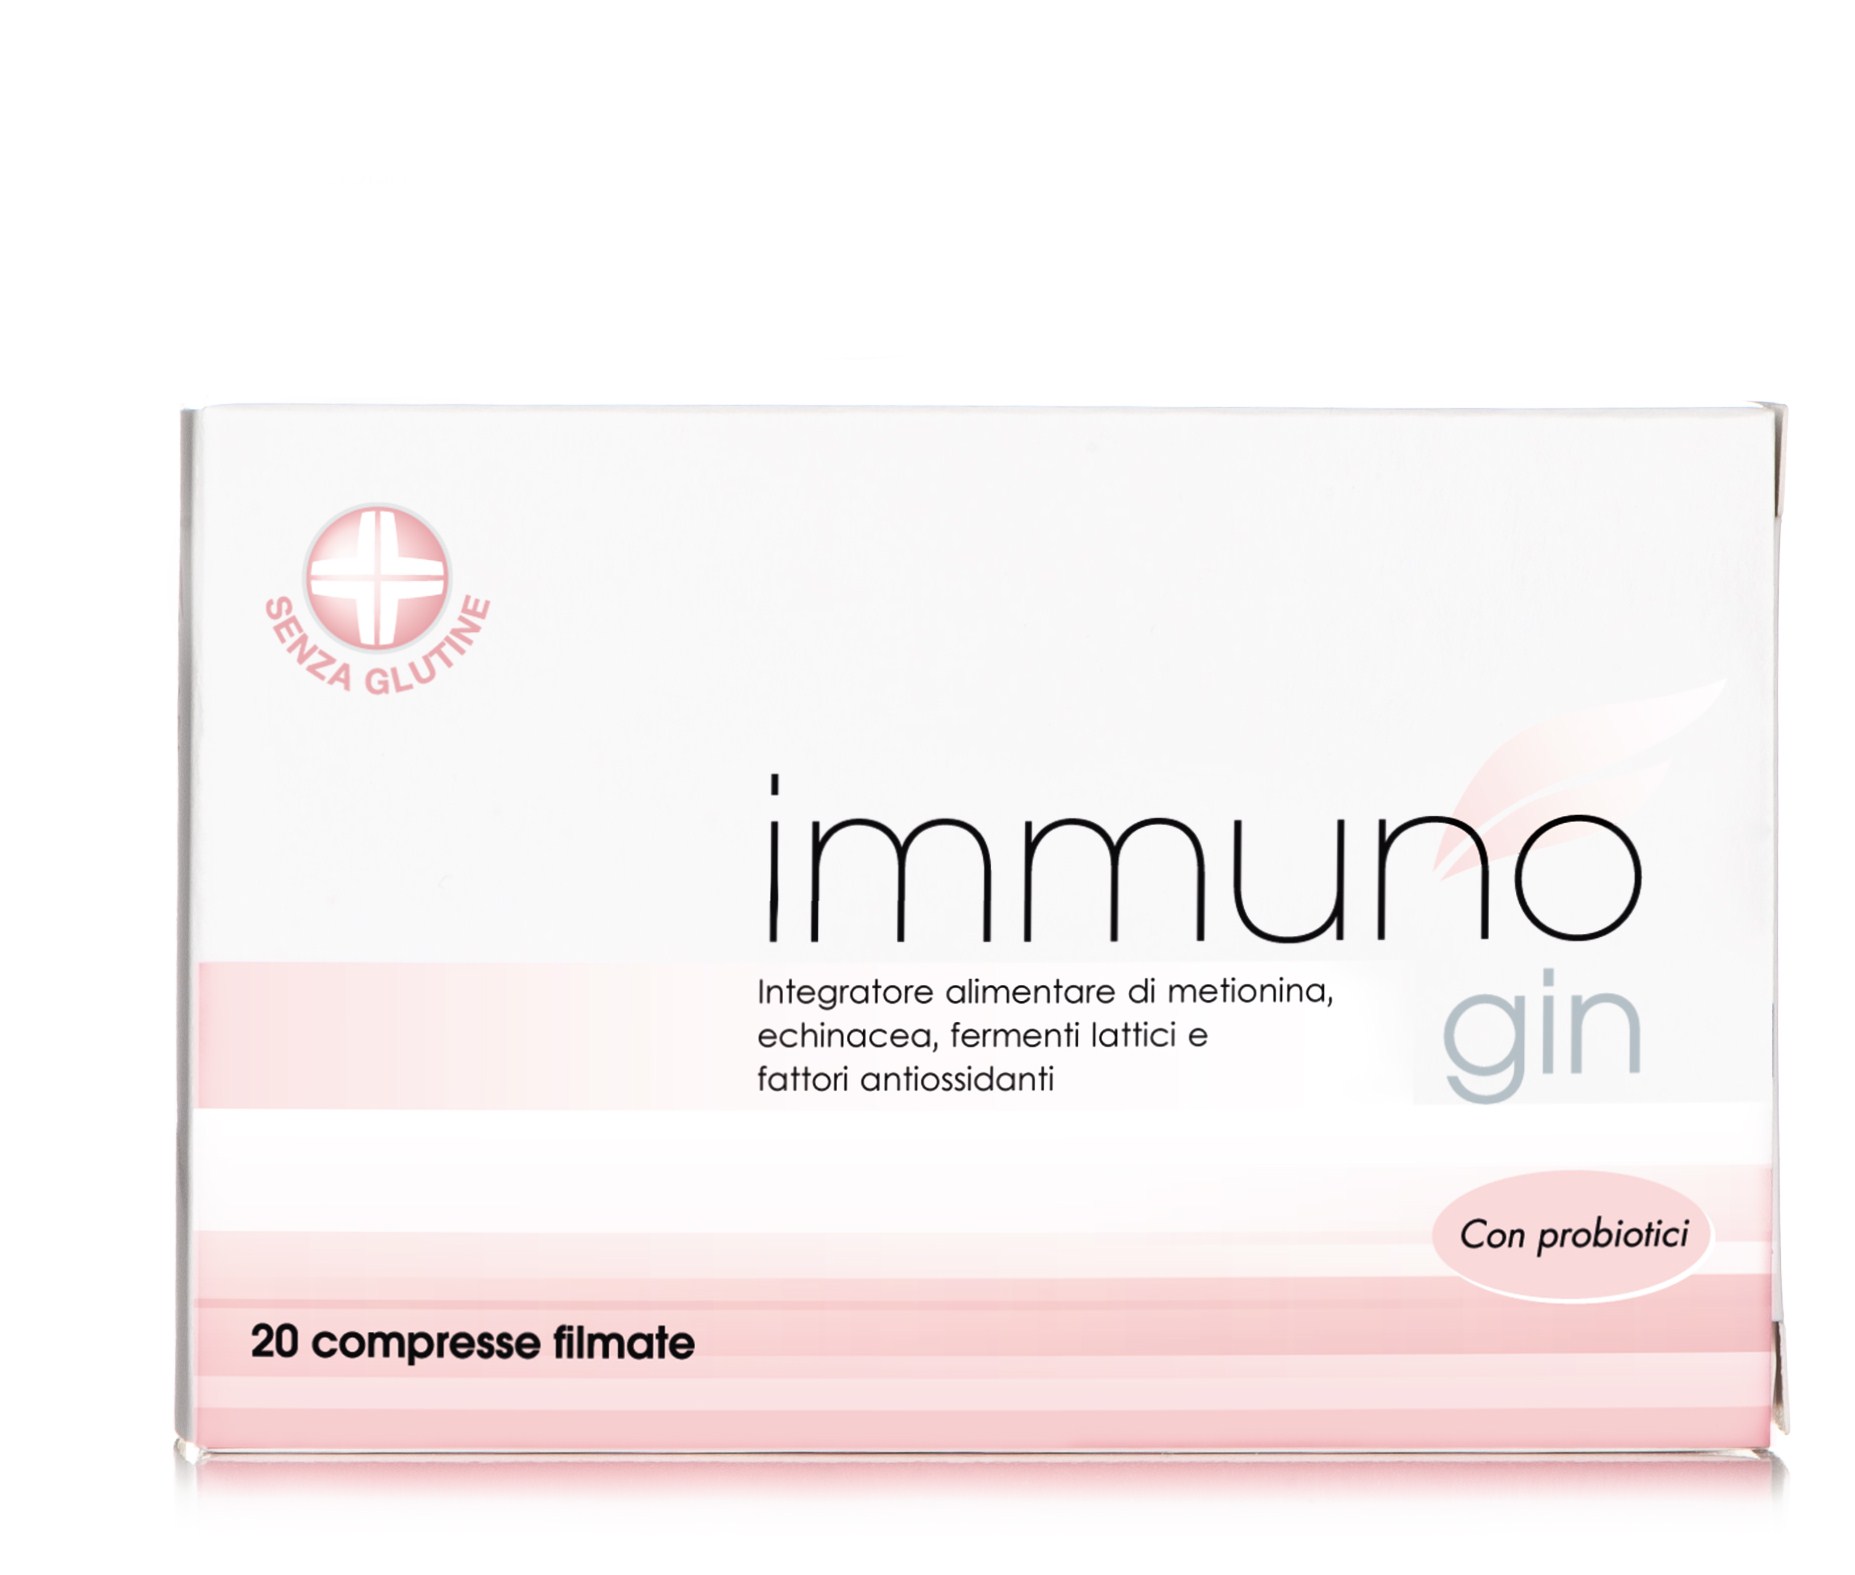 immuno gin integratore alimentare prevenzione delle infezioni virali e micotiche in ginecologia 20 compresse